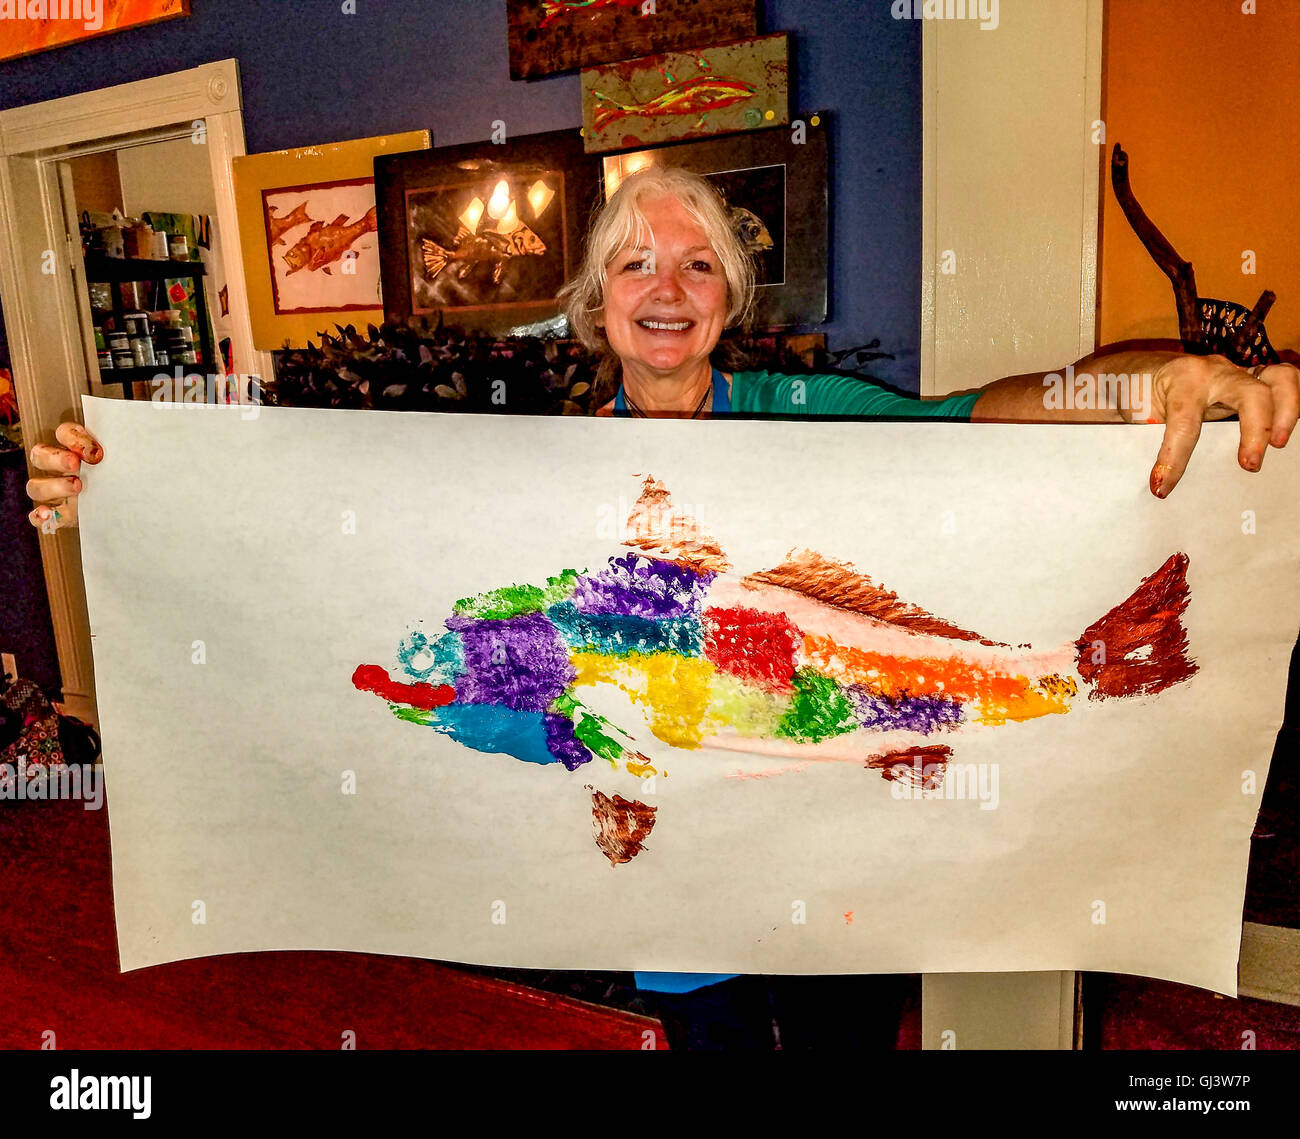 Impression finale de sébaste du poisson après la peinture au désir des Arts dans la région de Lake Charles. Vous peignez le poisson, puis transférer l'image Banque D'Images